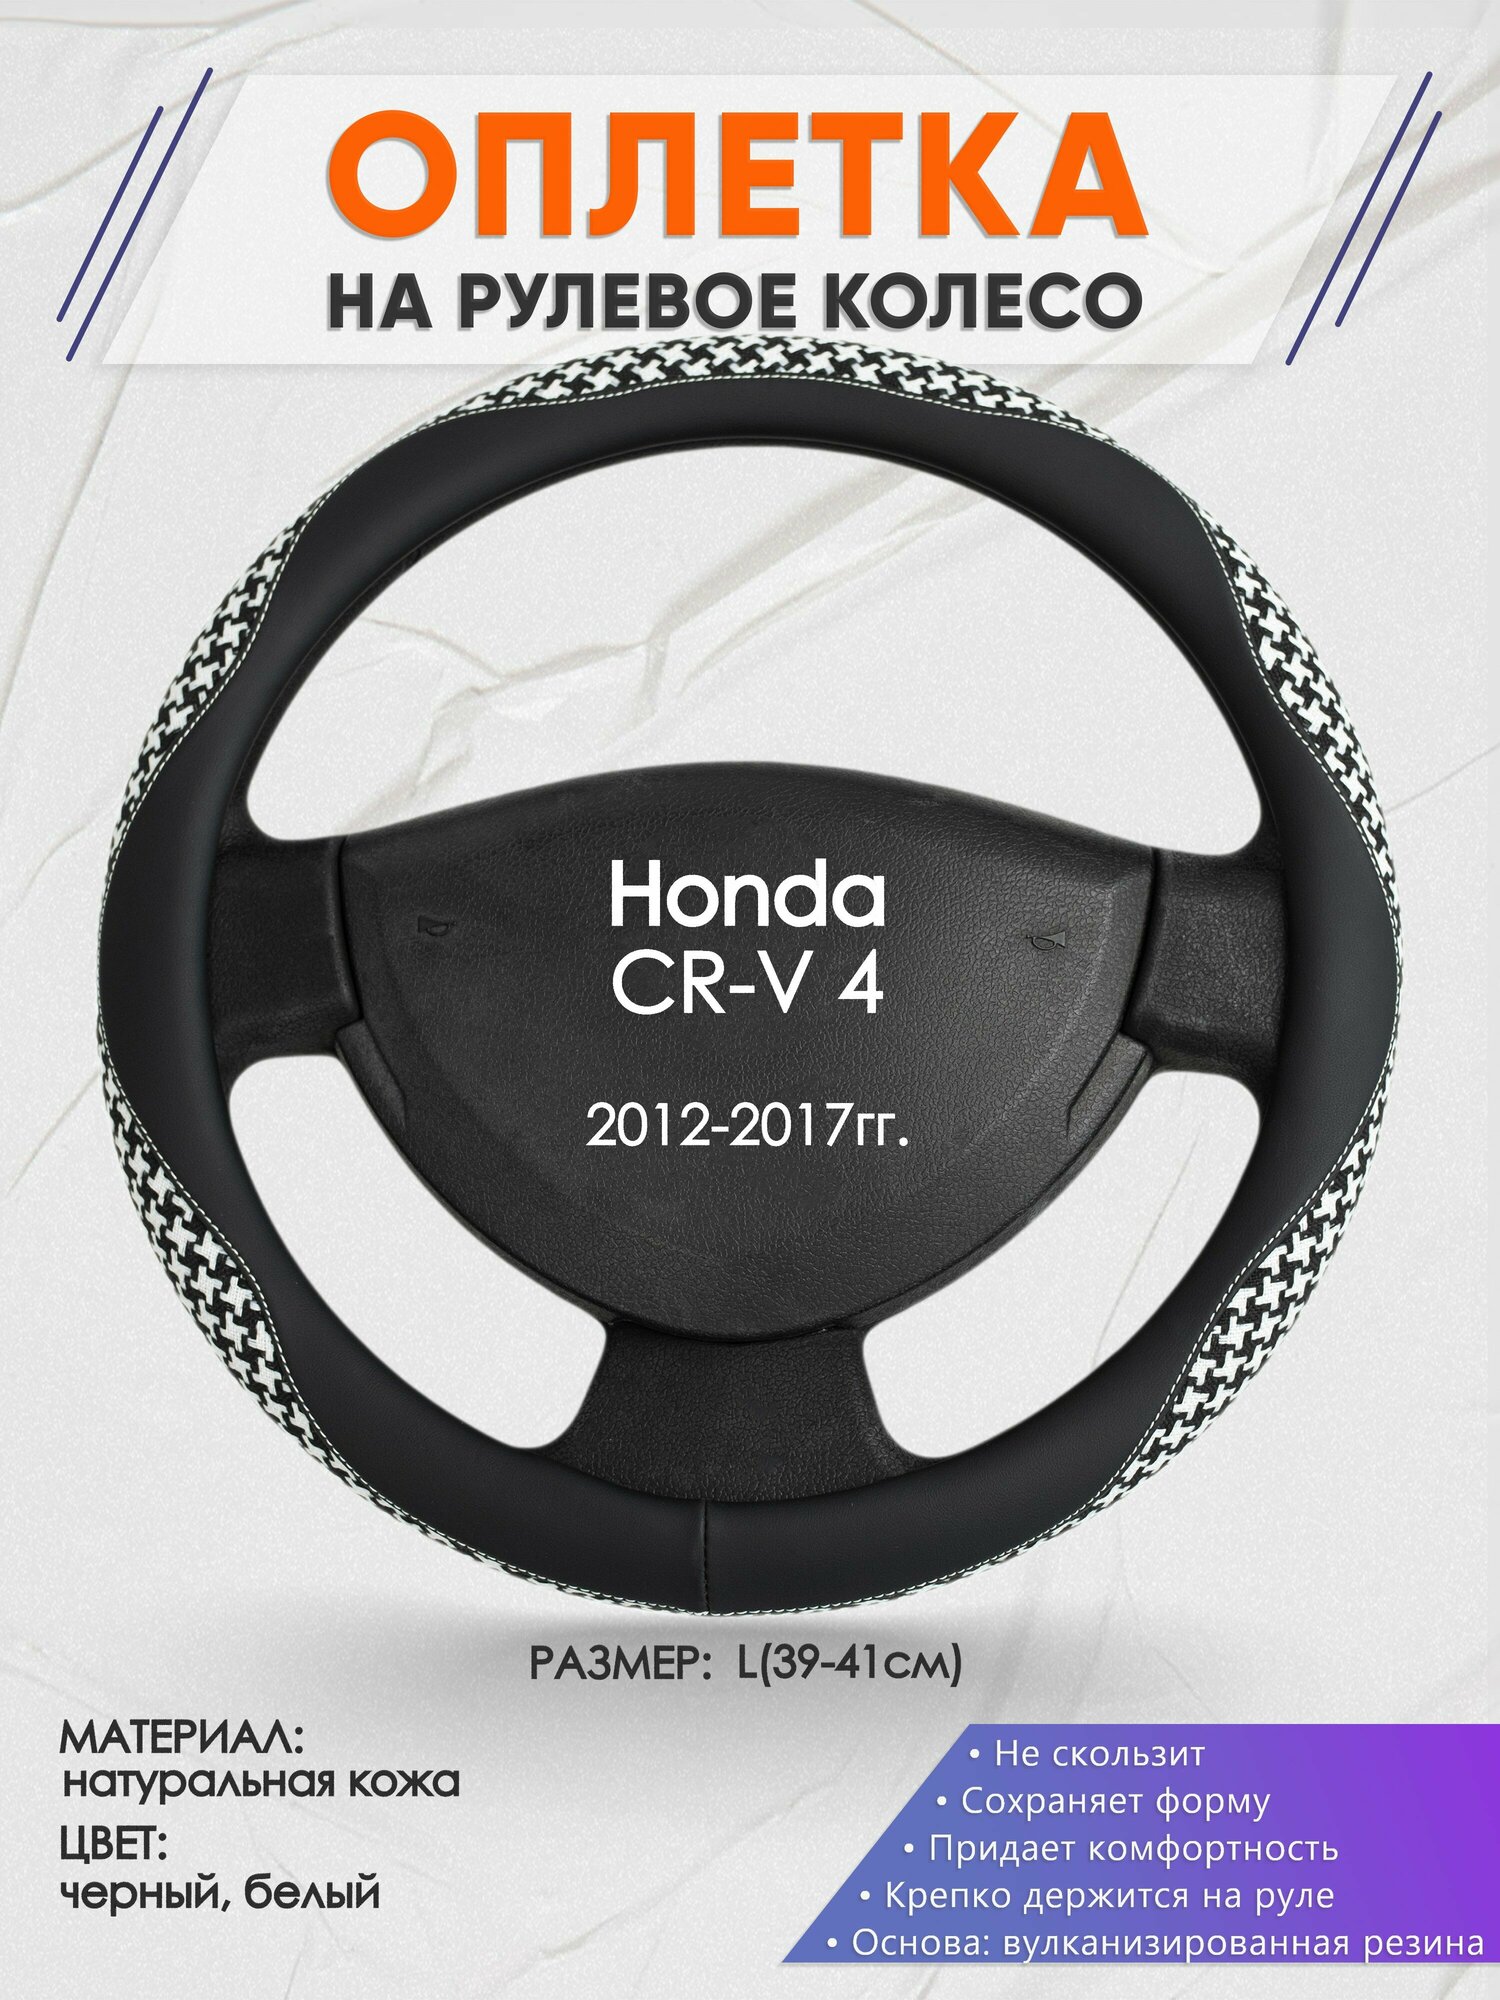 Оплетка на руль для Honda CR-V 4(Хонда срв 4) 2012-2017, L(39-41см), Натуральная кожа 21